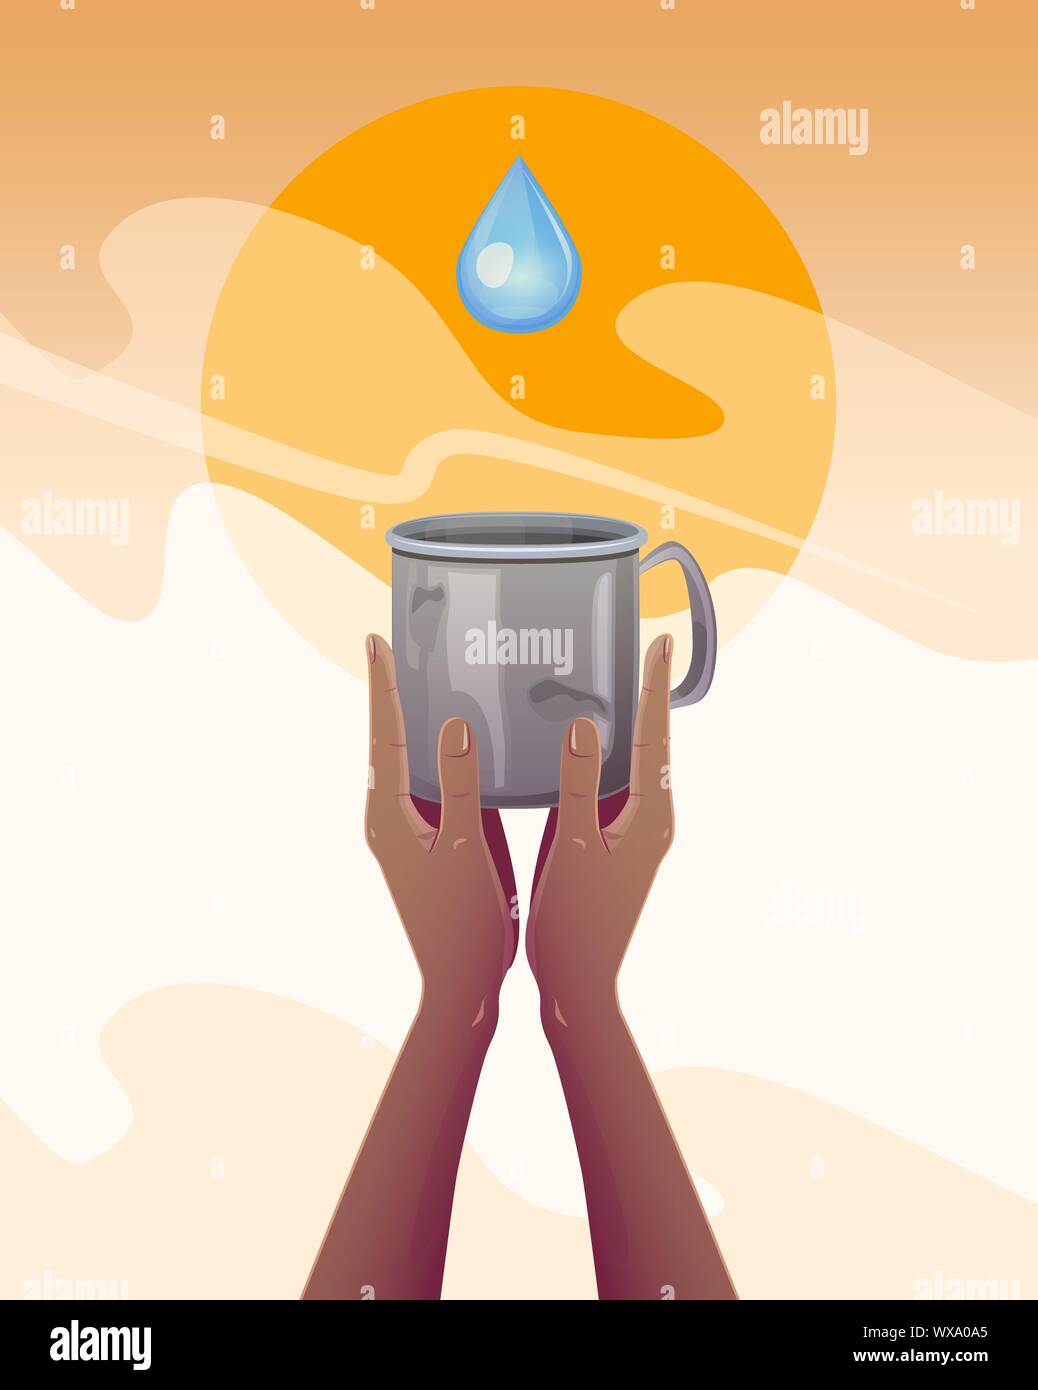 Wasserknappheit. Hände mit einem leeren Becher, Durst nach Wasser in eine Dürre. Globale Ökologie Konzept, Flachbild Vector Illustration. Stock Vektor